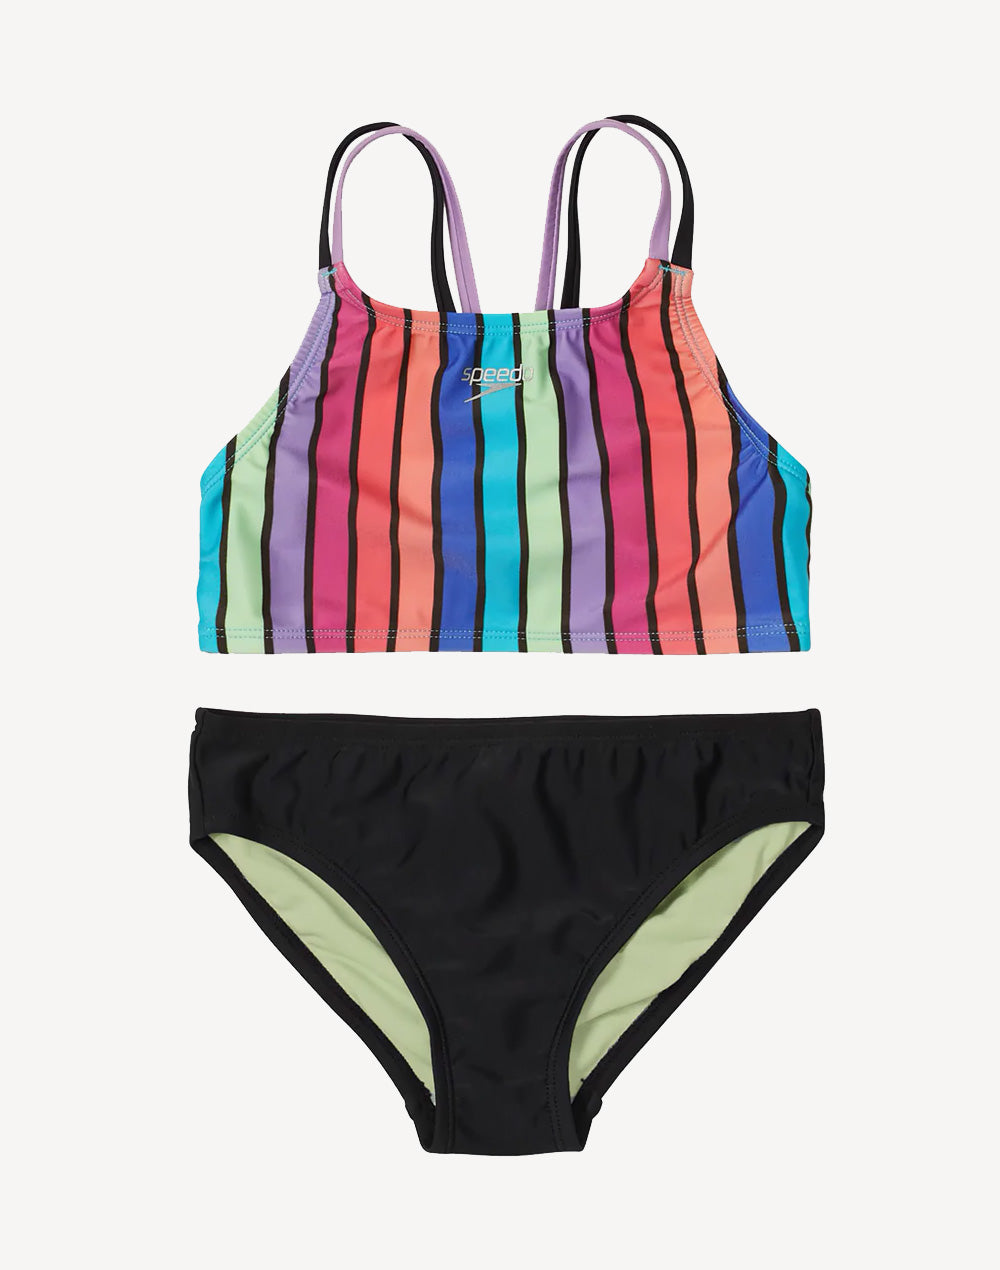 Girls Printed Strappy Back Bikini Set#color_printed-stripe-black